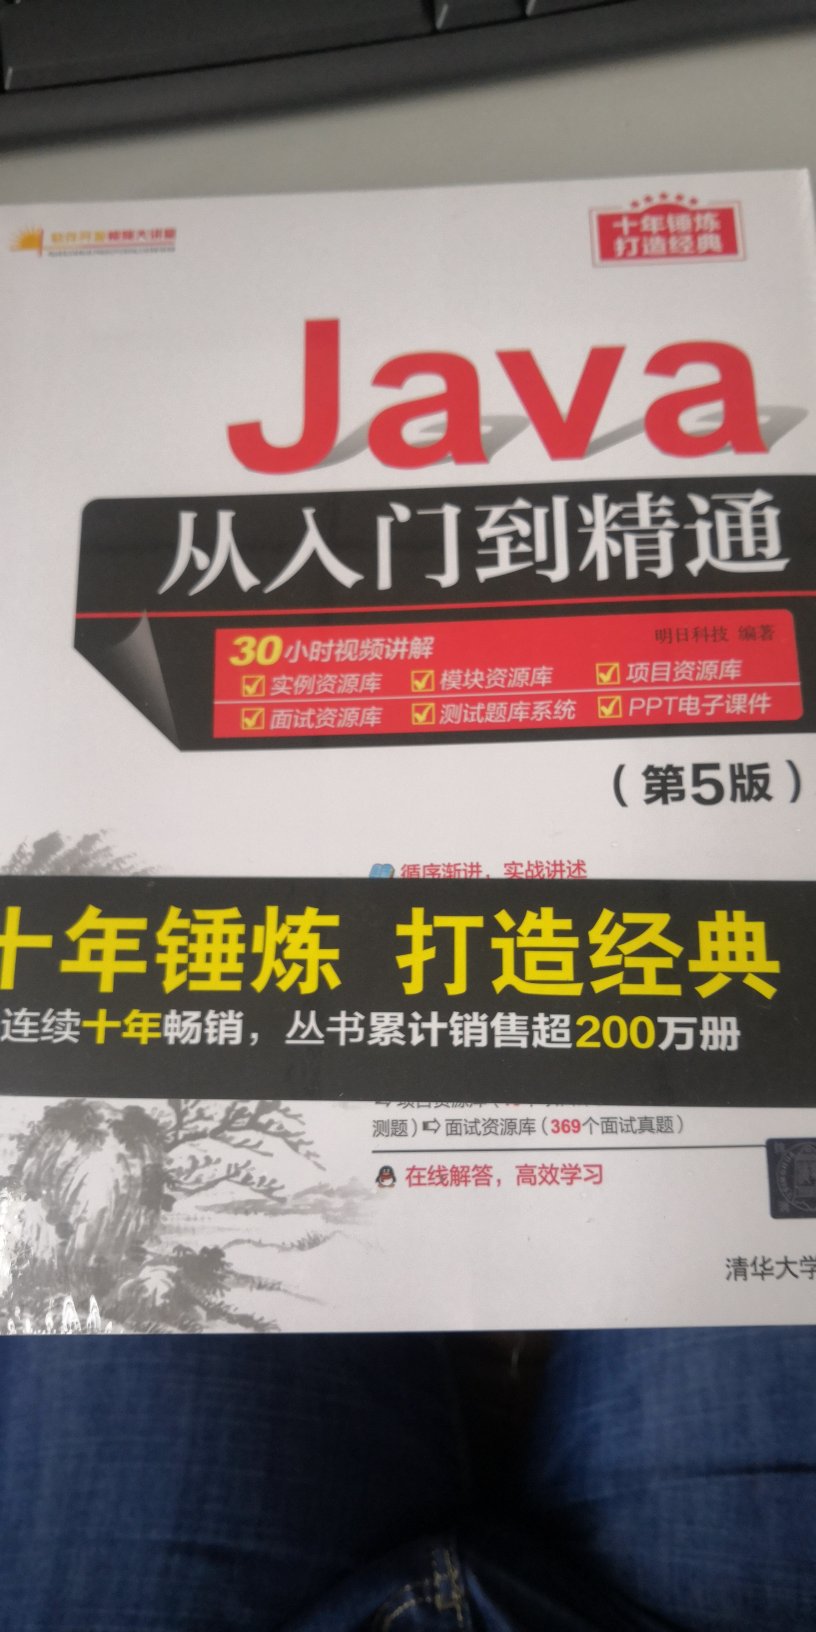 这本Java从入门到精通这本书挺好的，包装的特别好，我觉得特别适合于初学者，感觉很不错，昨天买的今天上午就收到了，很开心，祝愿卖家生意越来越好，越来越红火，越来越兴隆